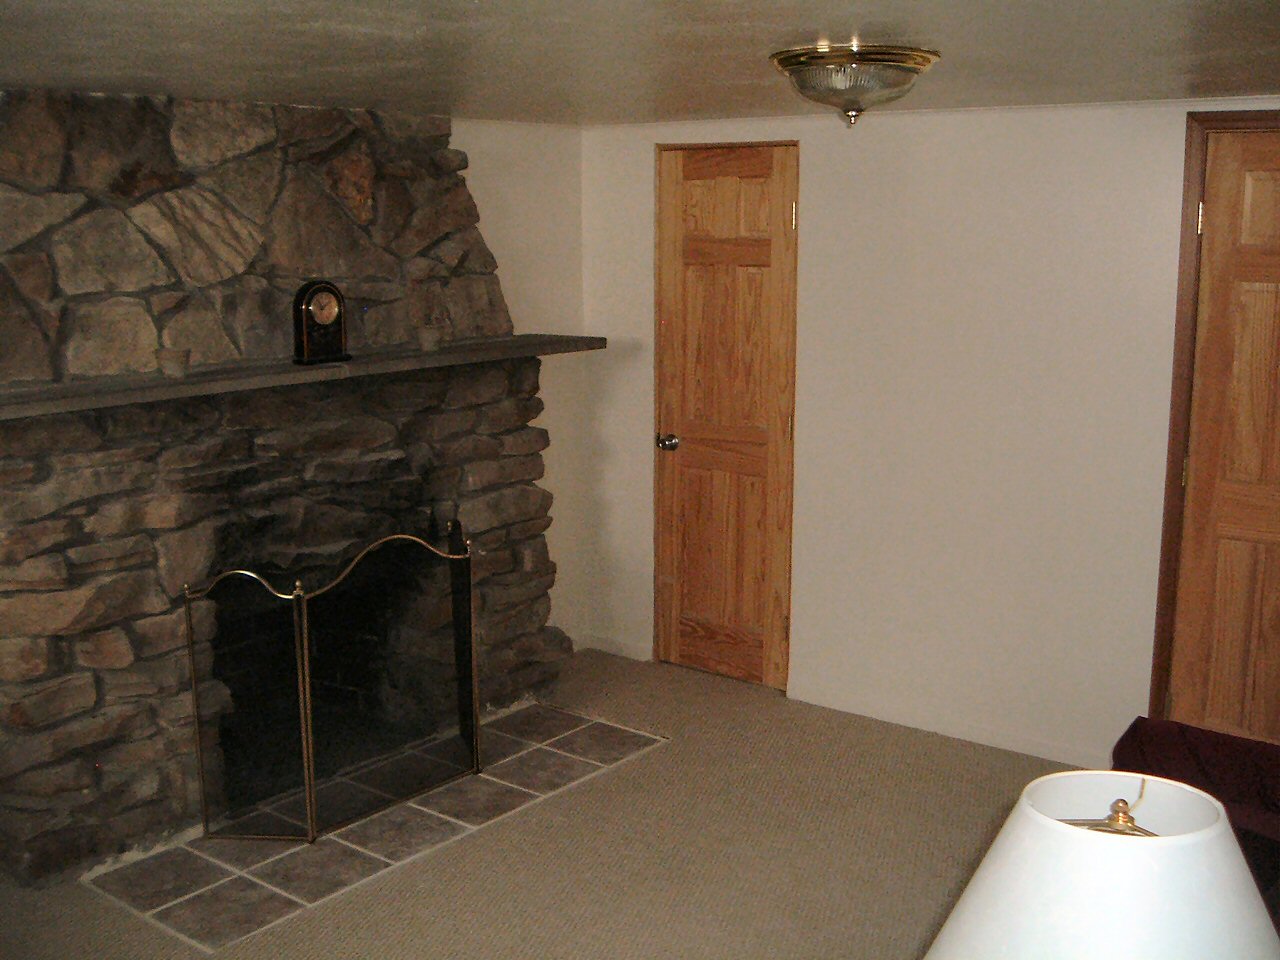 Basement Fireplace